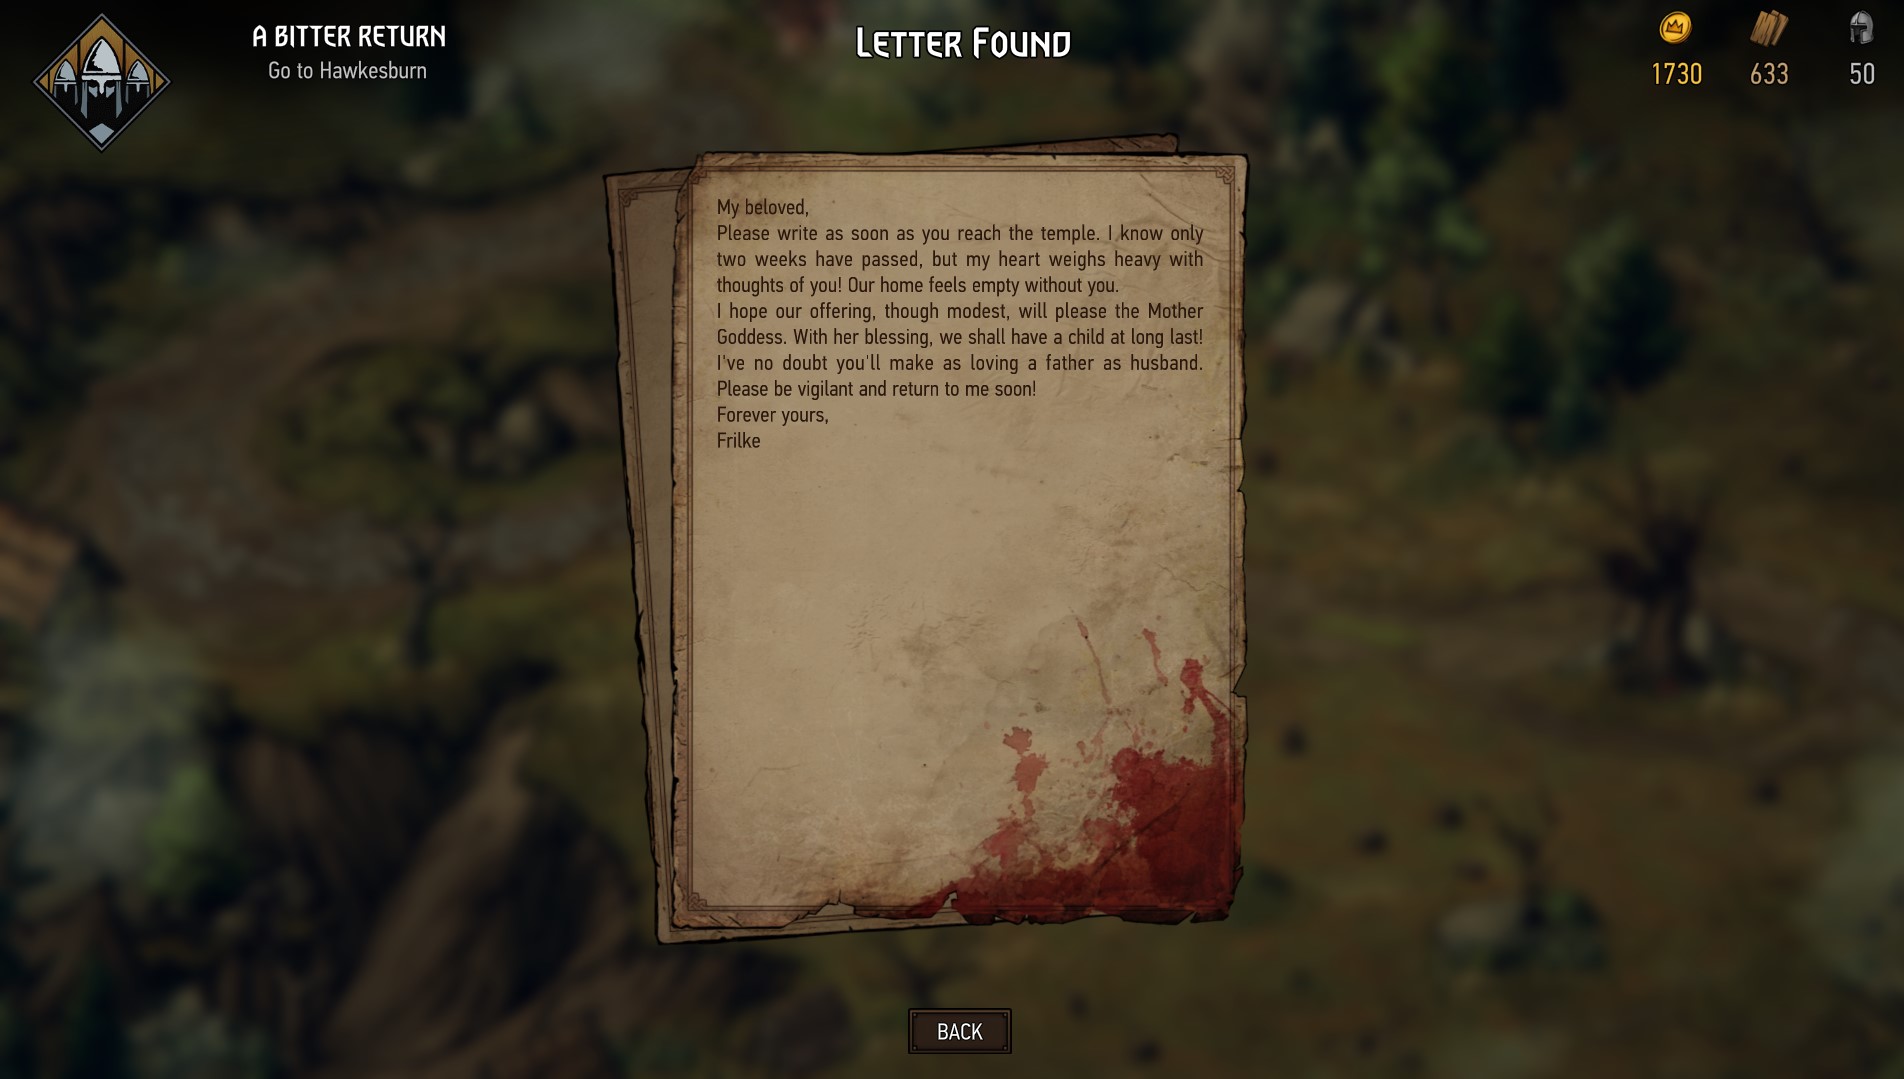 Una carta encontrada en un cadáver: un recurso típico de The Witcher